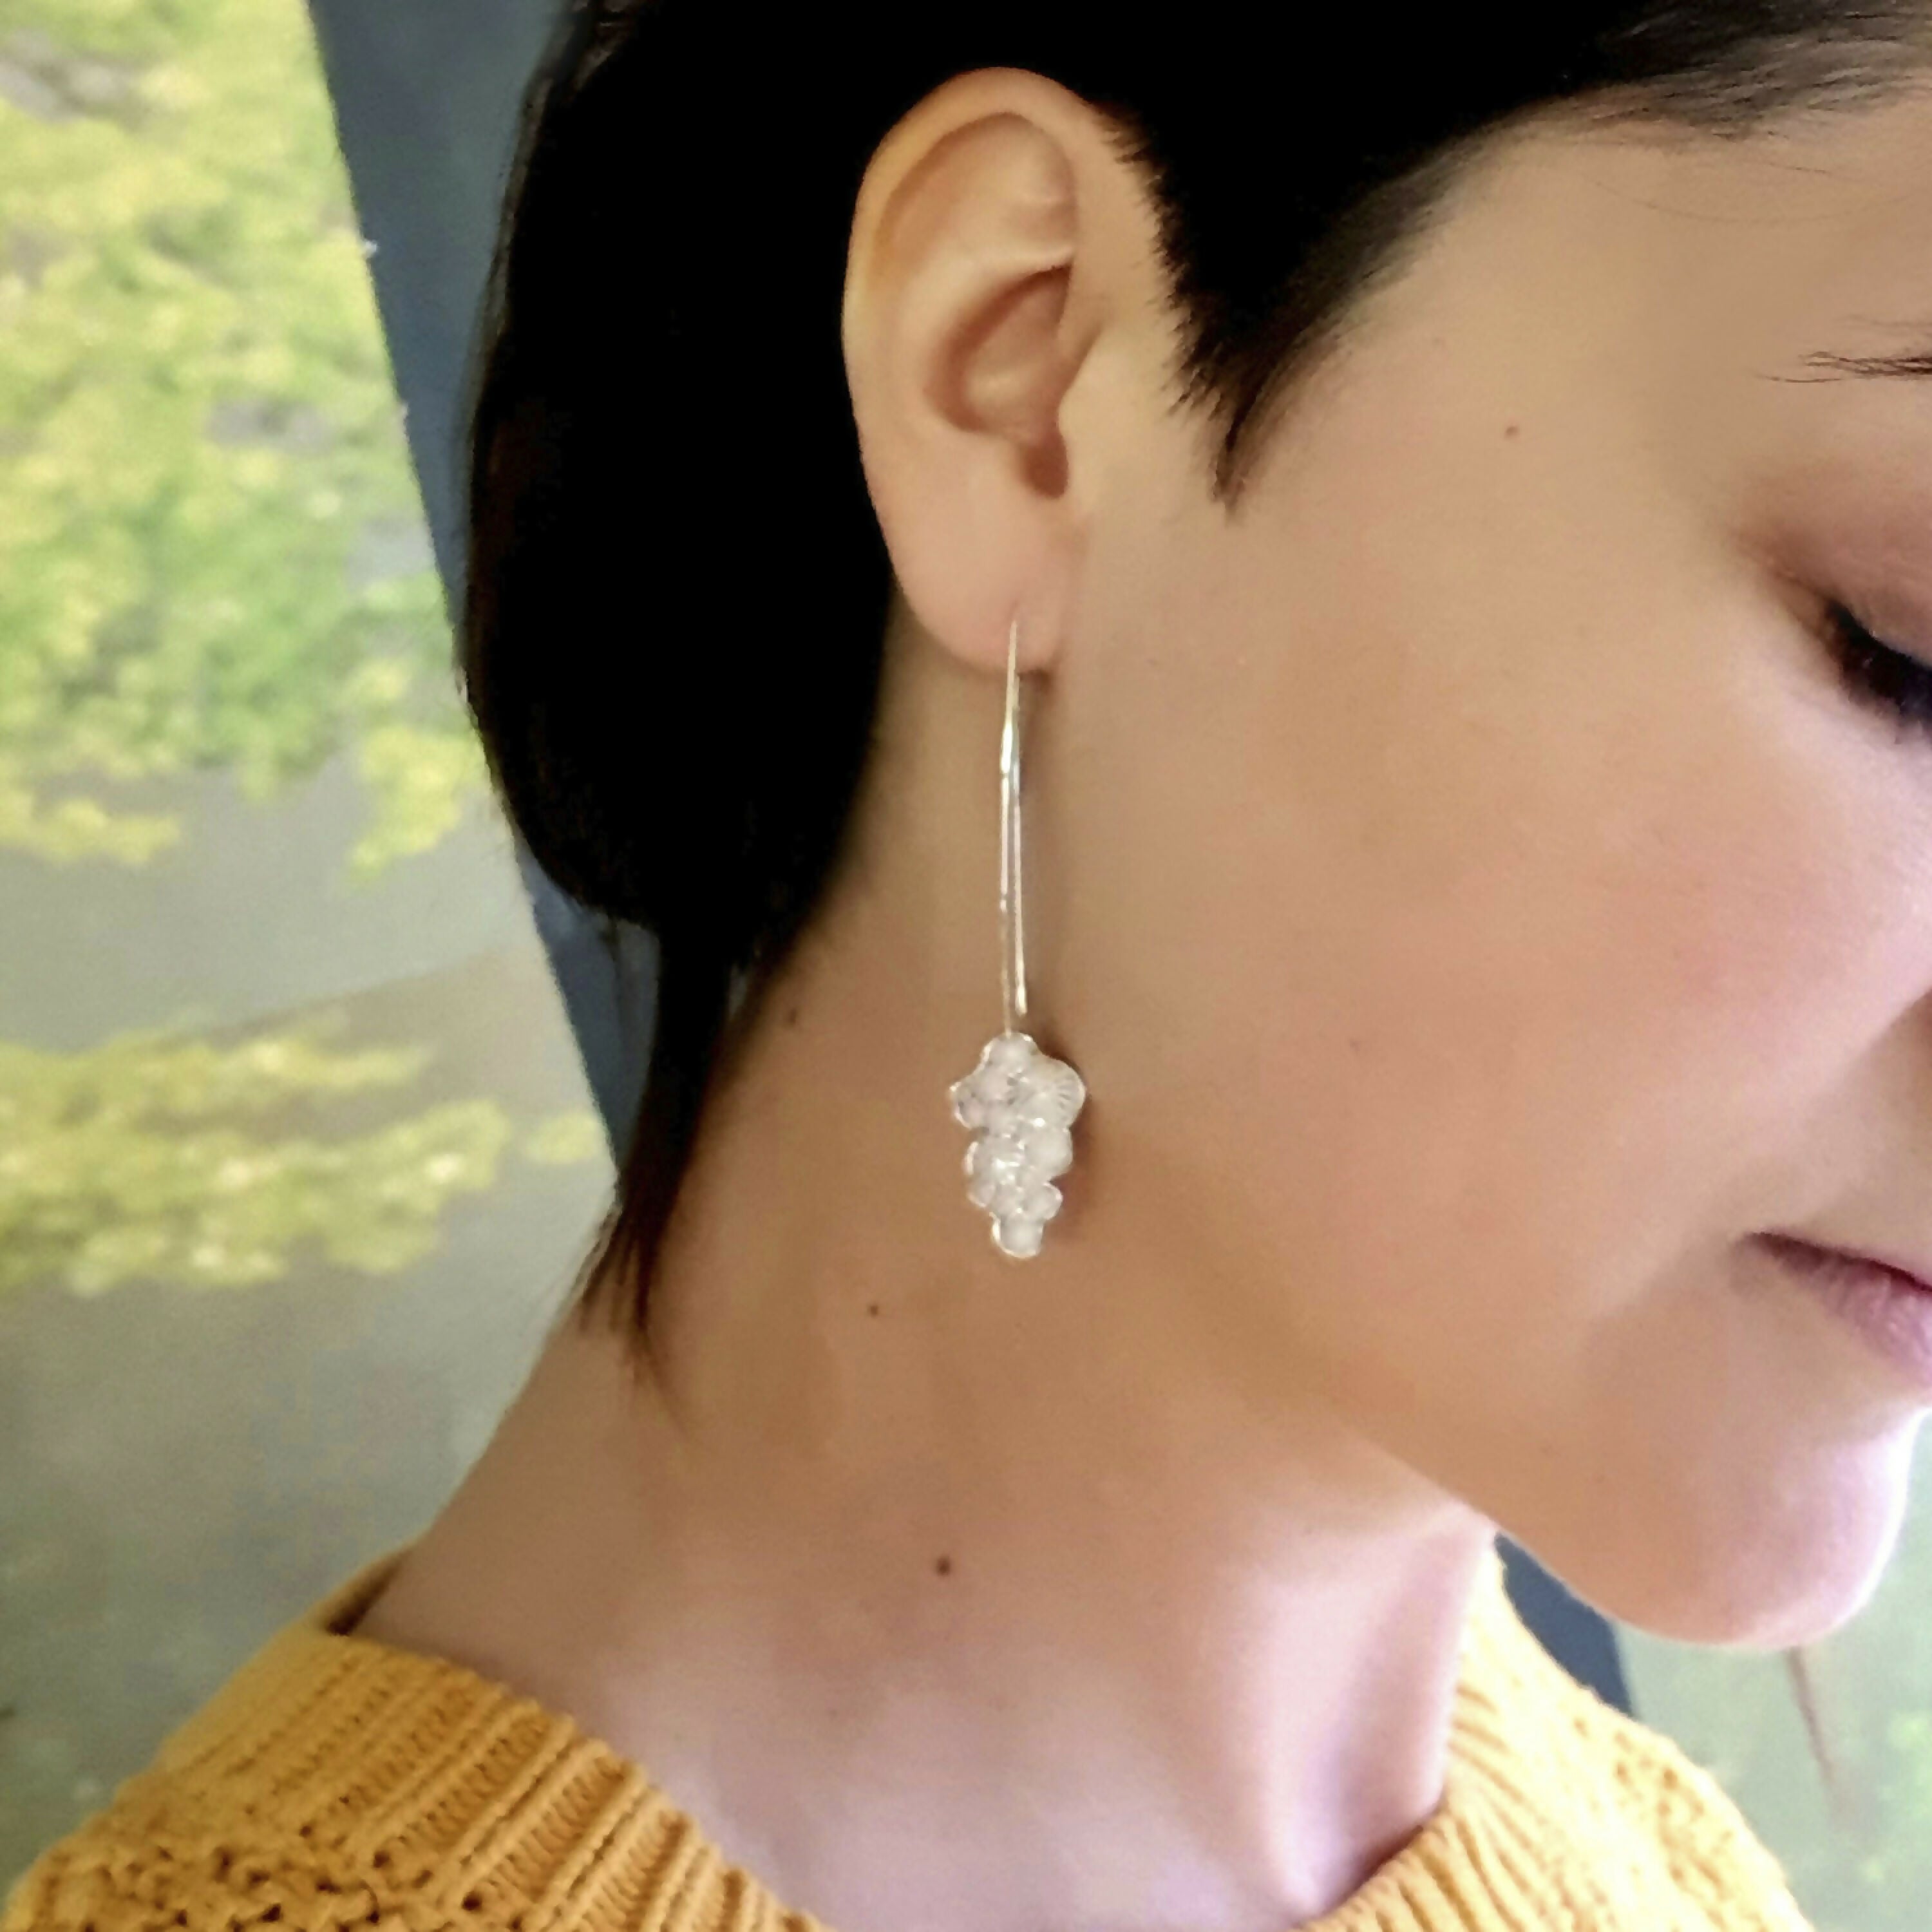 Boucles d’oreilles pendantes de la collection Corail, en argent massif recyclé | EMPREINTES Paris | EMPREINTES Paris